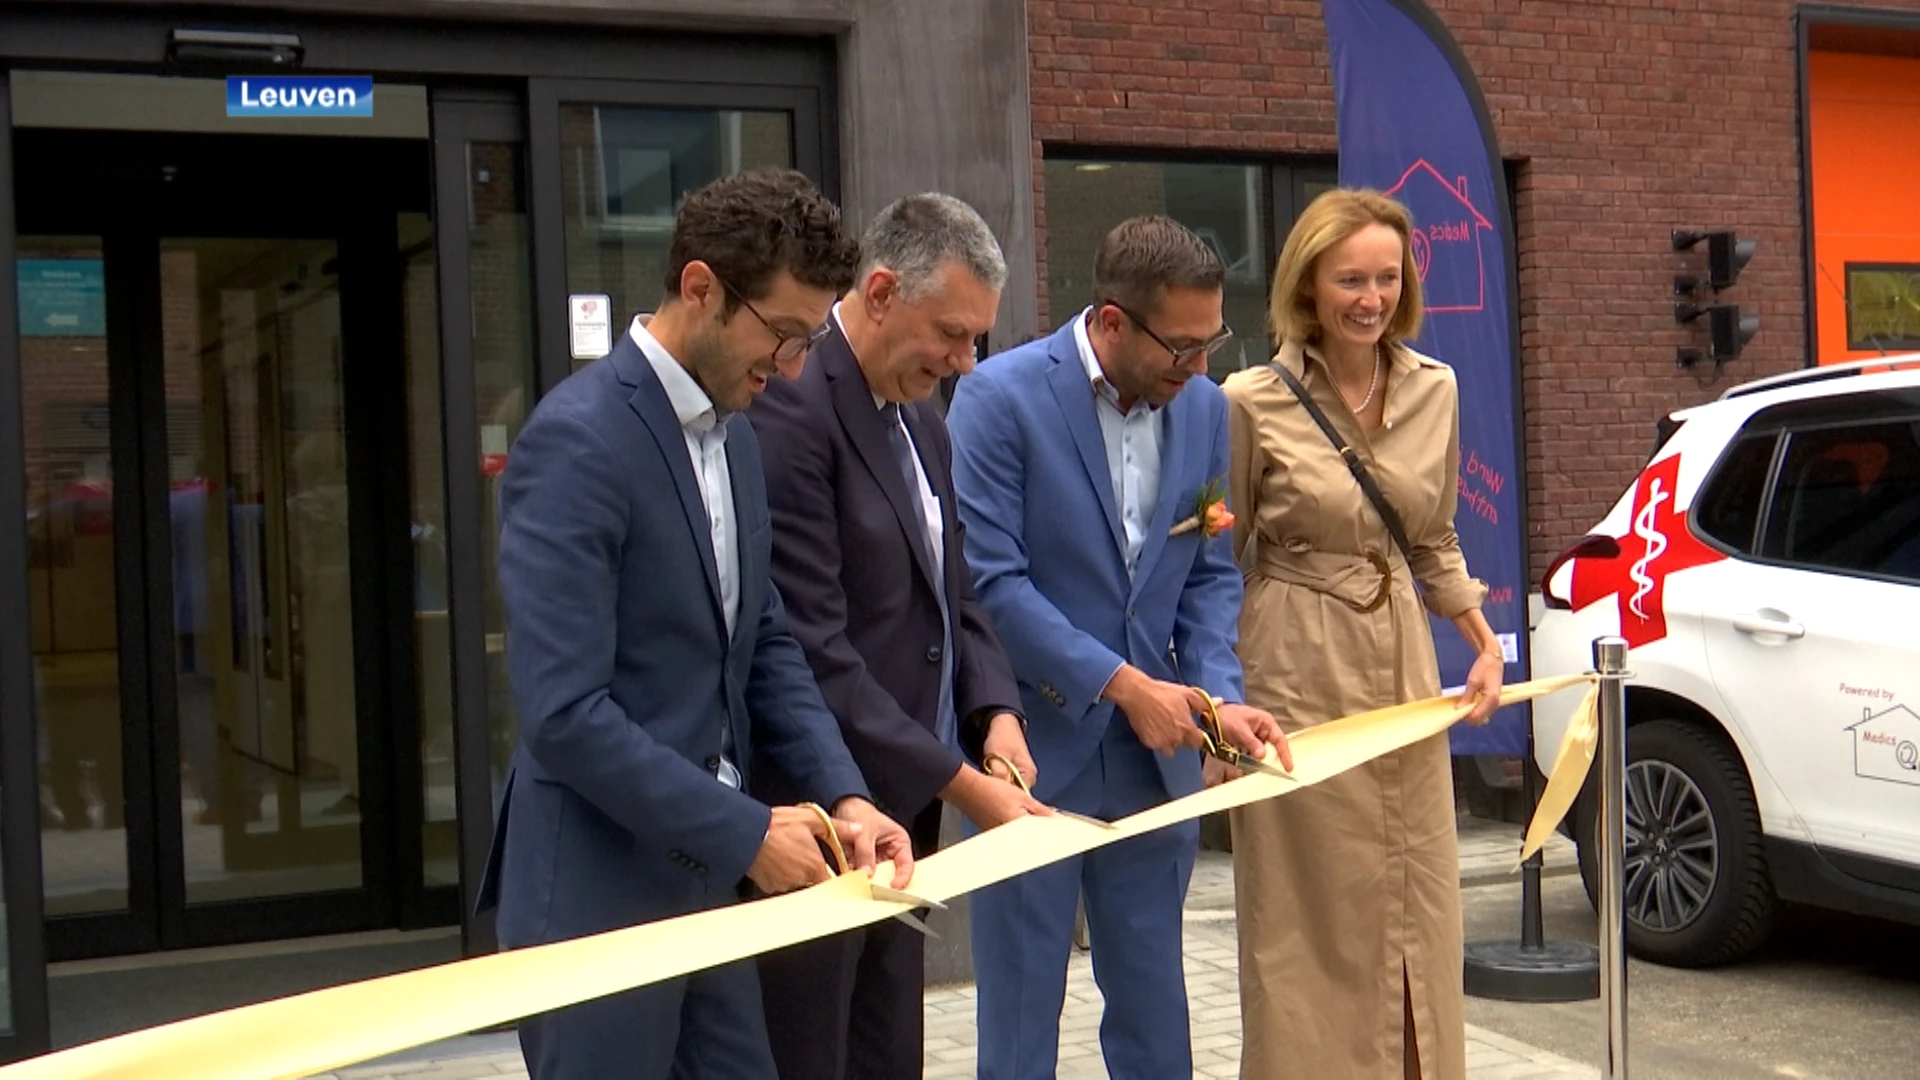 Nieuwe huisartsenwachtpost aan Heilig Hartziekenhuis in Leuven plechtig geopend